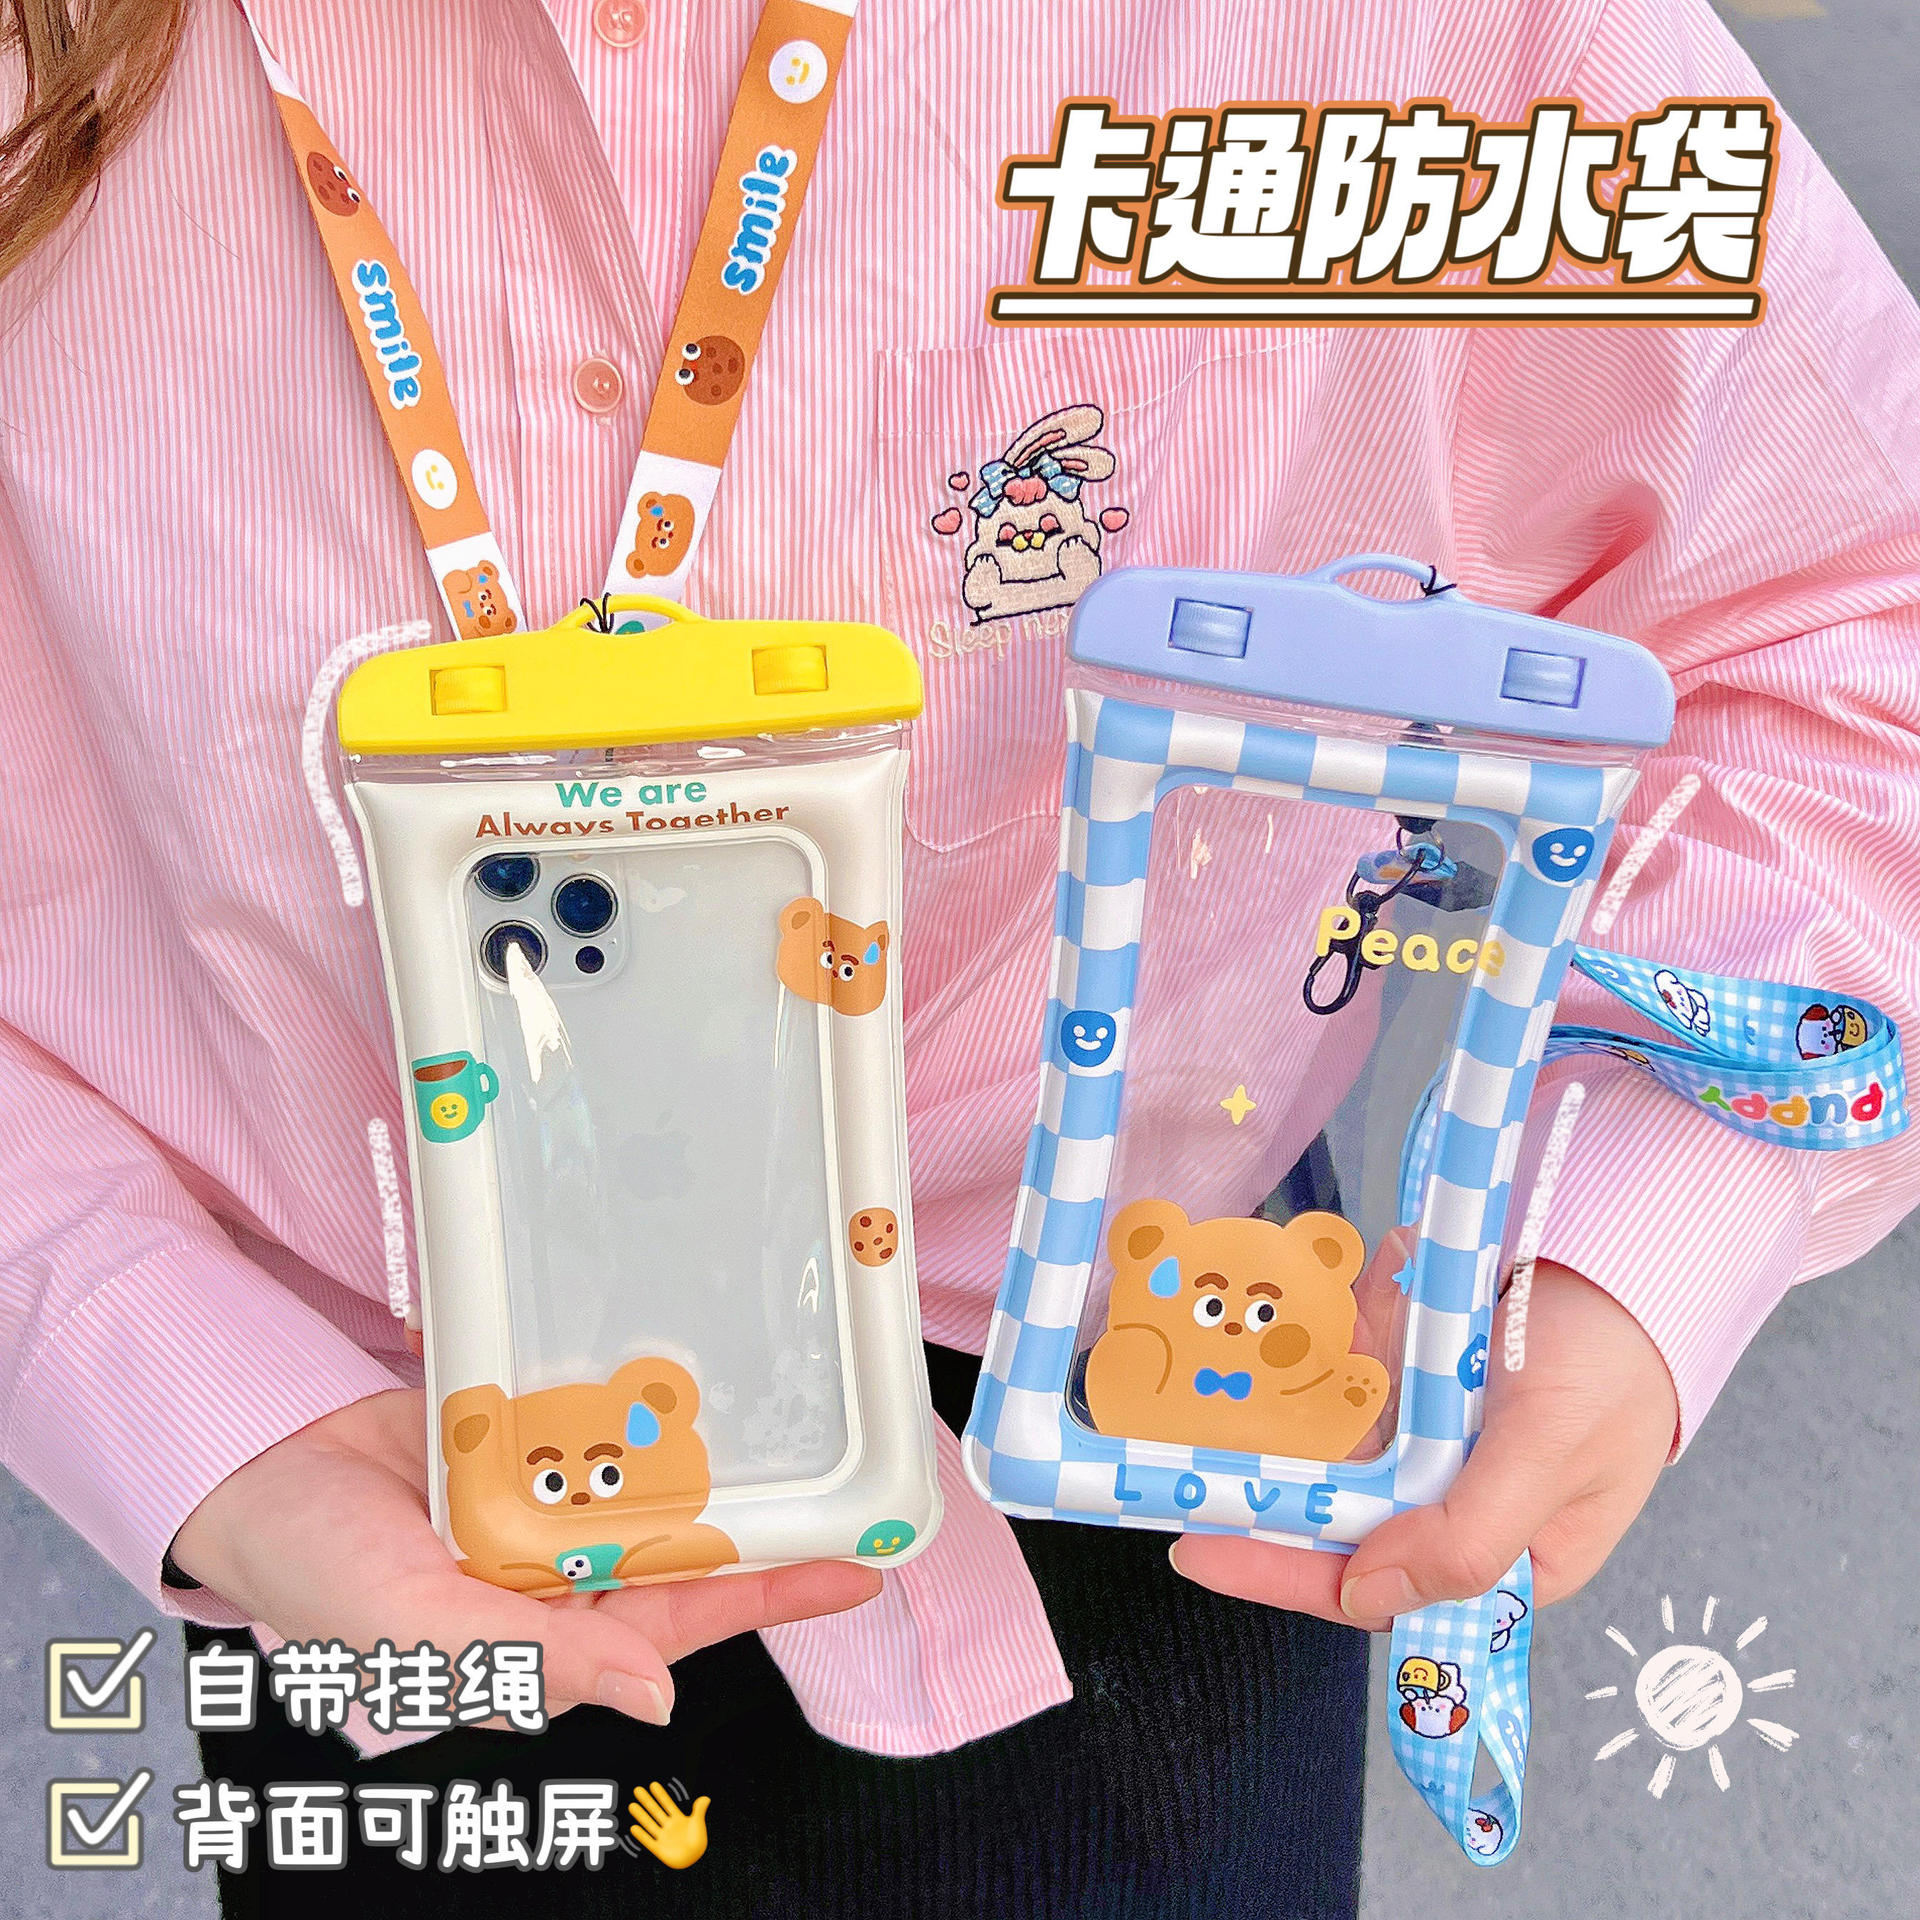 夏季塑料手机可爱卡通透明气囊防水袋流沙防震袋游泳手机挂袋子图